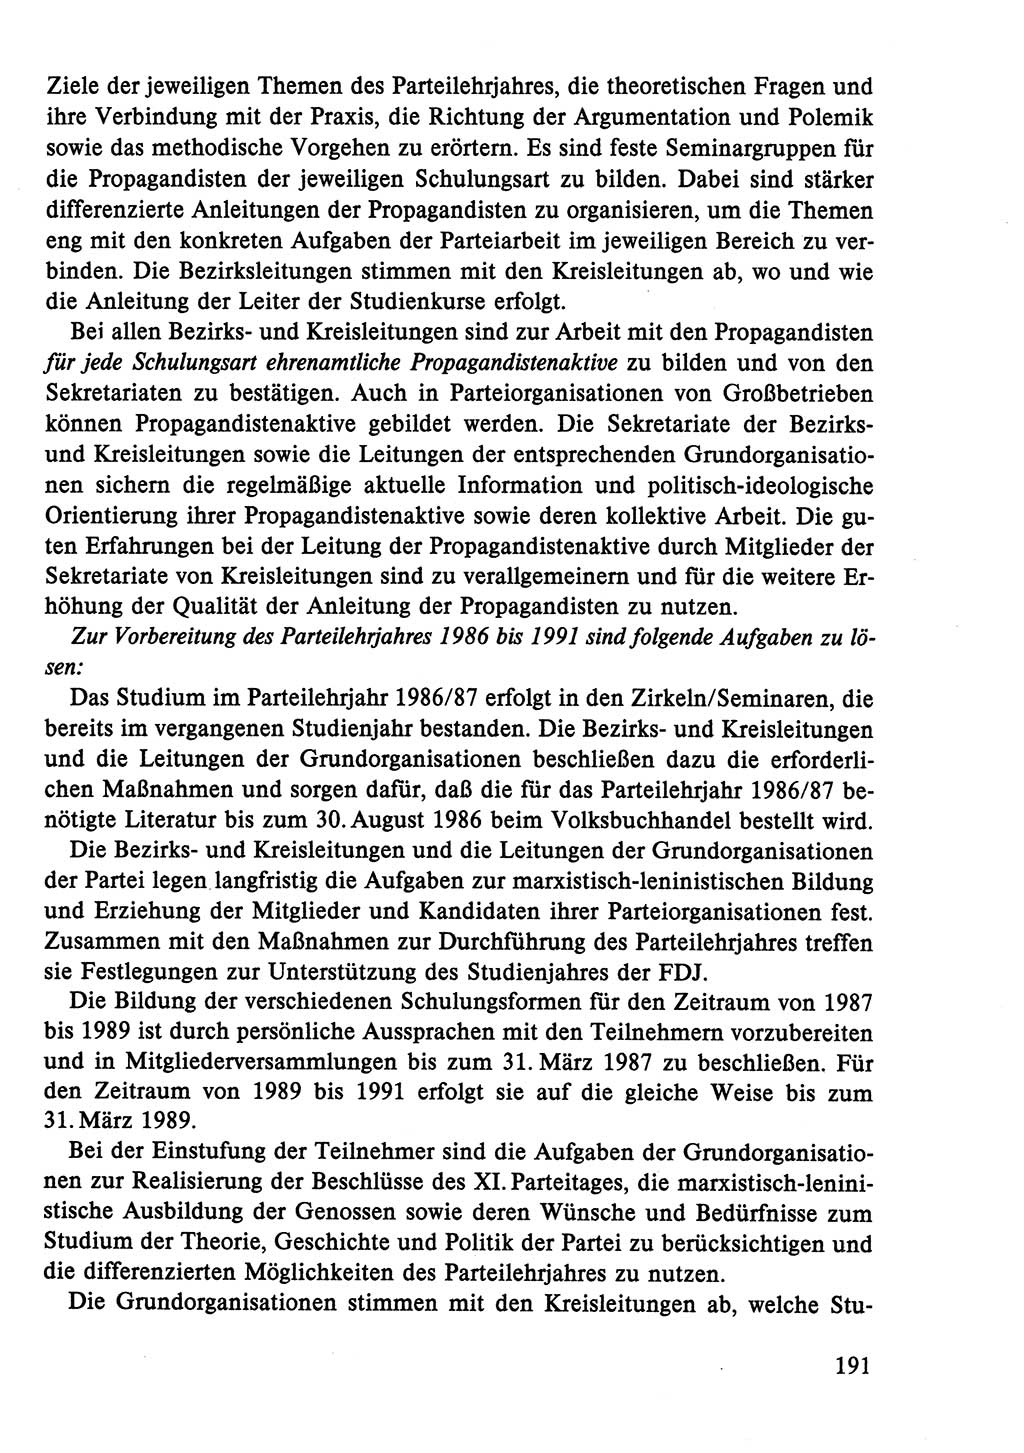 Dokumente der Sozialistischen Einheitspartei Deutschlands (SED) [Deutsche Demokratische Republik (DDR)] 1986-1987, Seite 191 (Dok. SED DDR 1986-1987, S. 191)